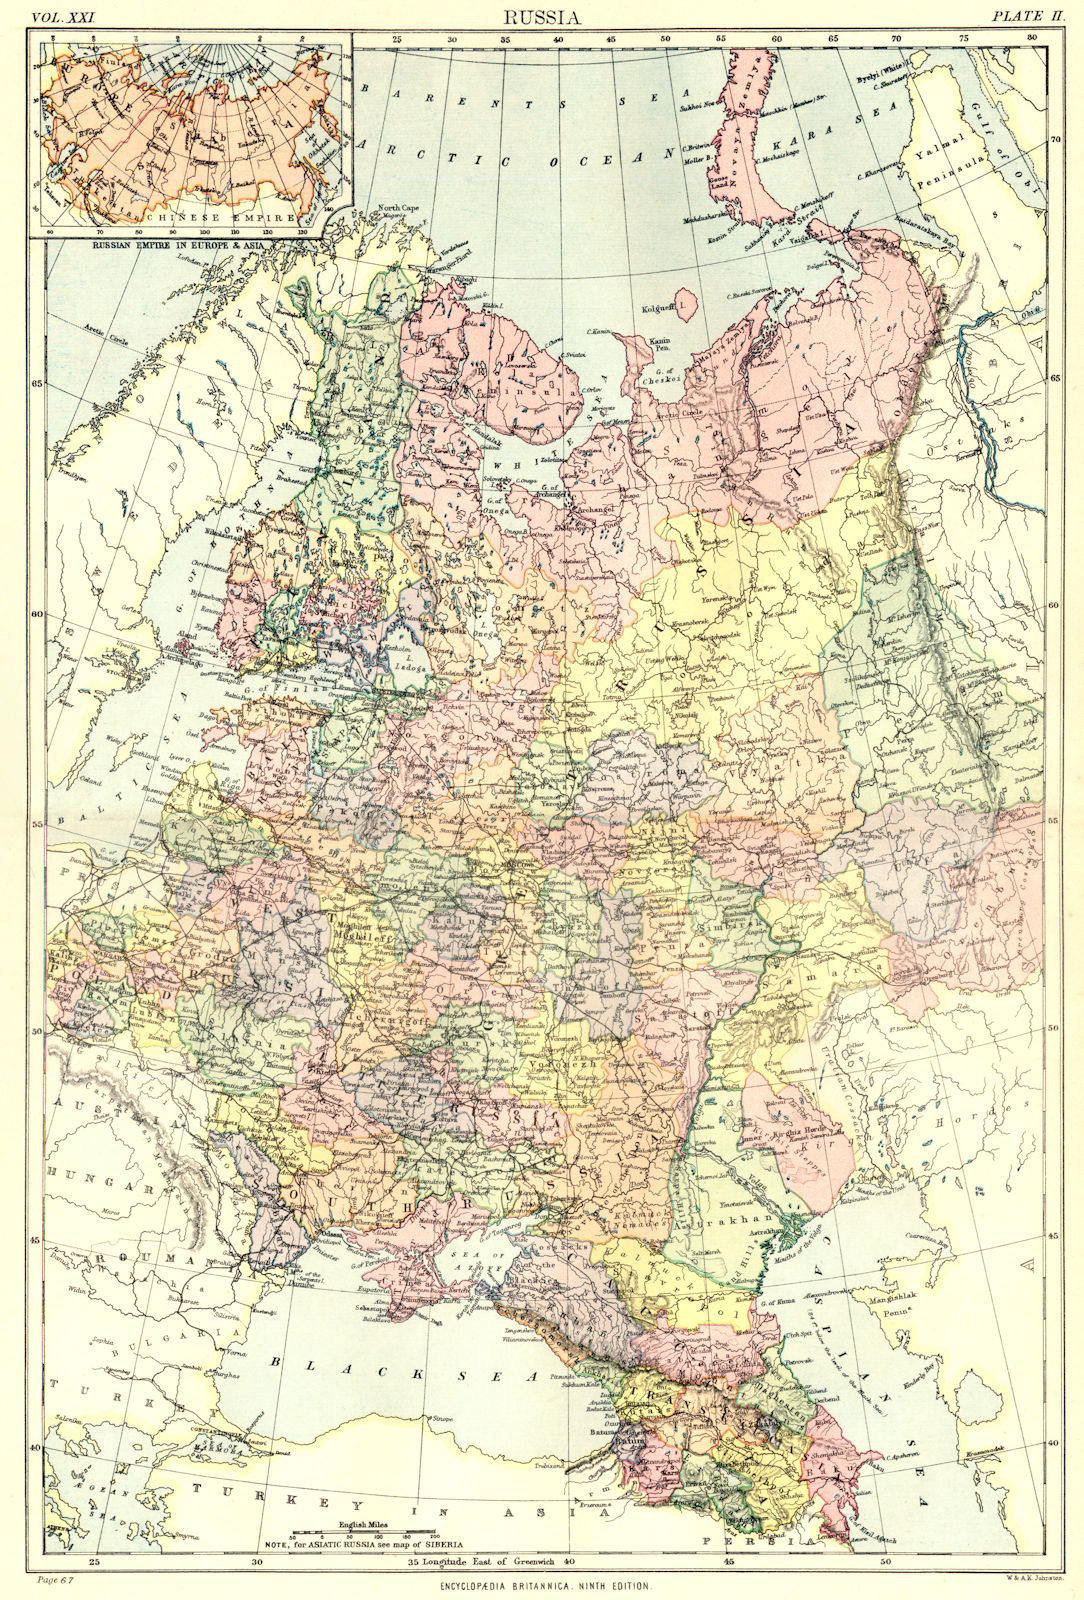 Associate Product EUROPEAN RUSSIA. Ukraine Finland Georgia Caucasus Baltics. Britannica 1898 map